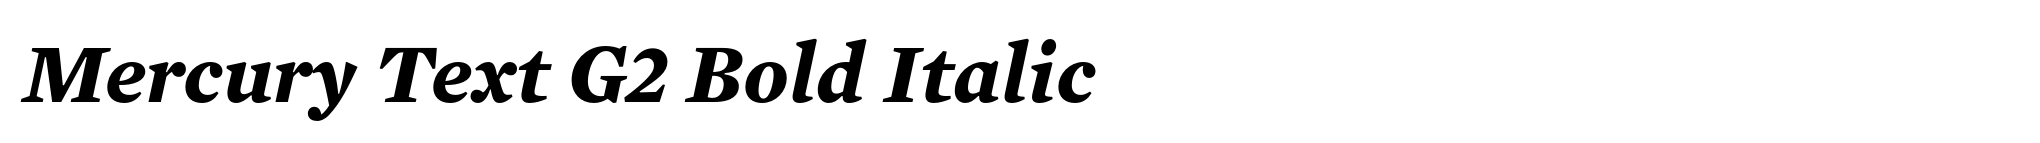 Mercury Text G2 Bold Italic image